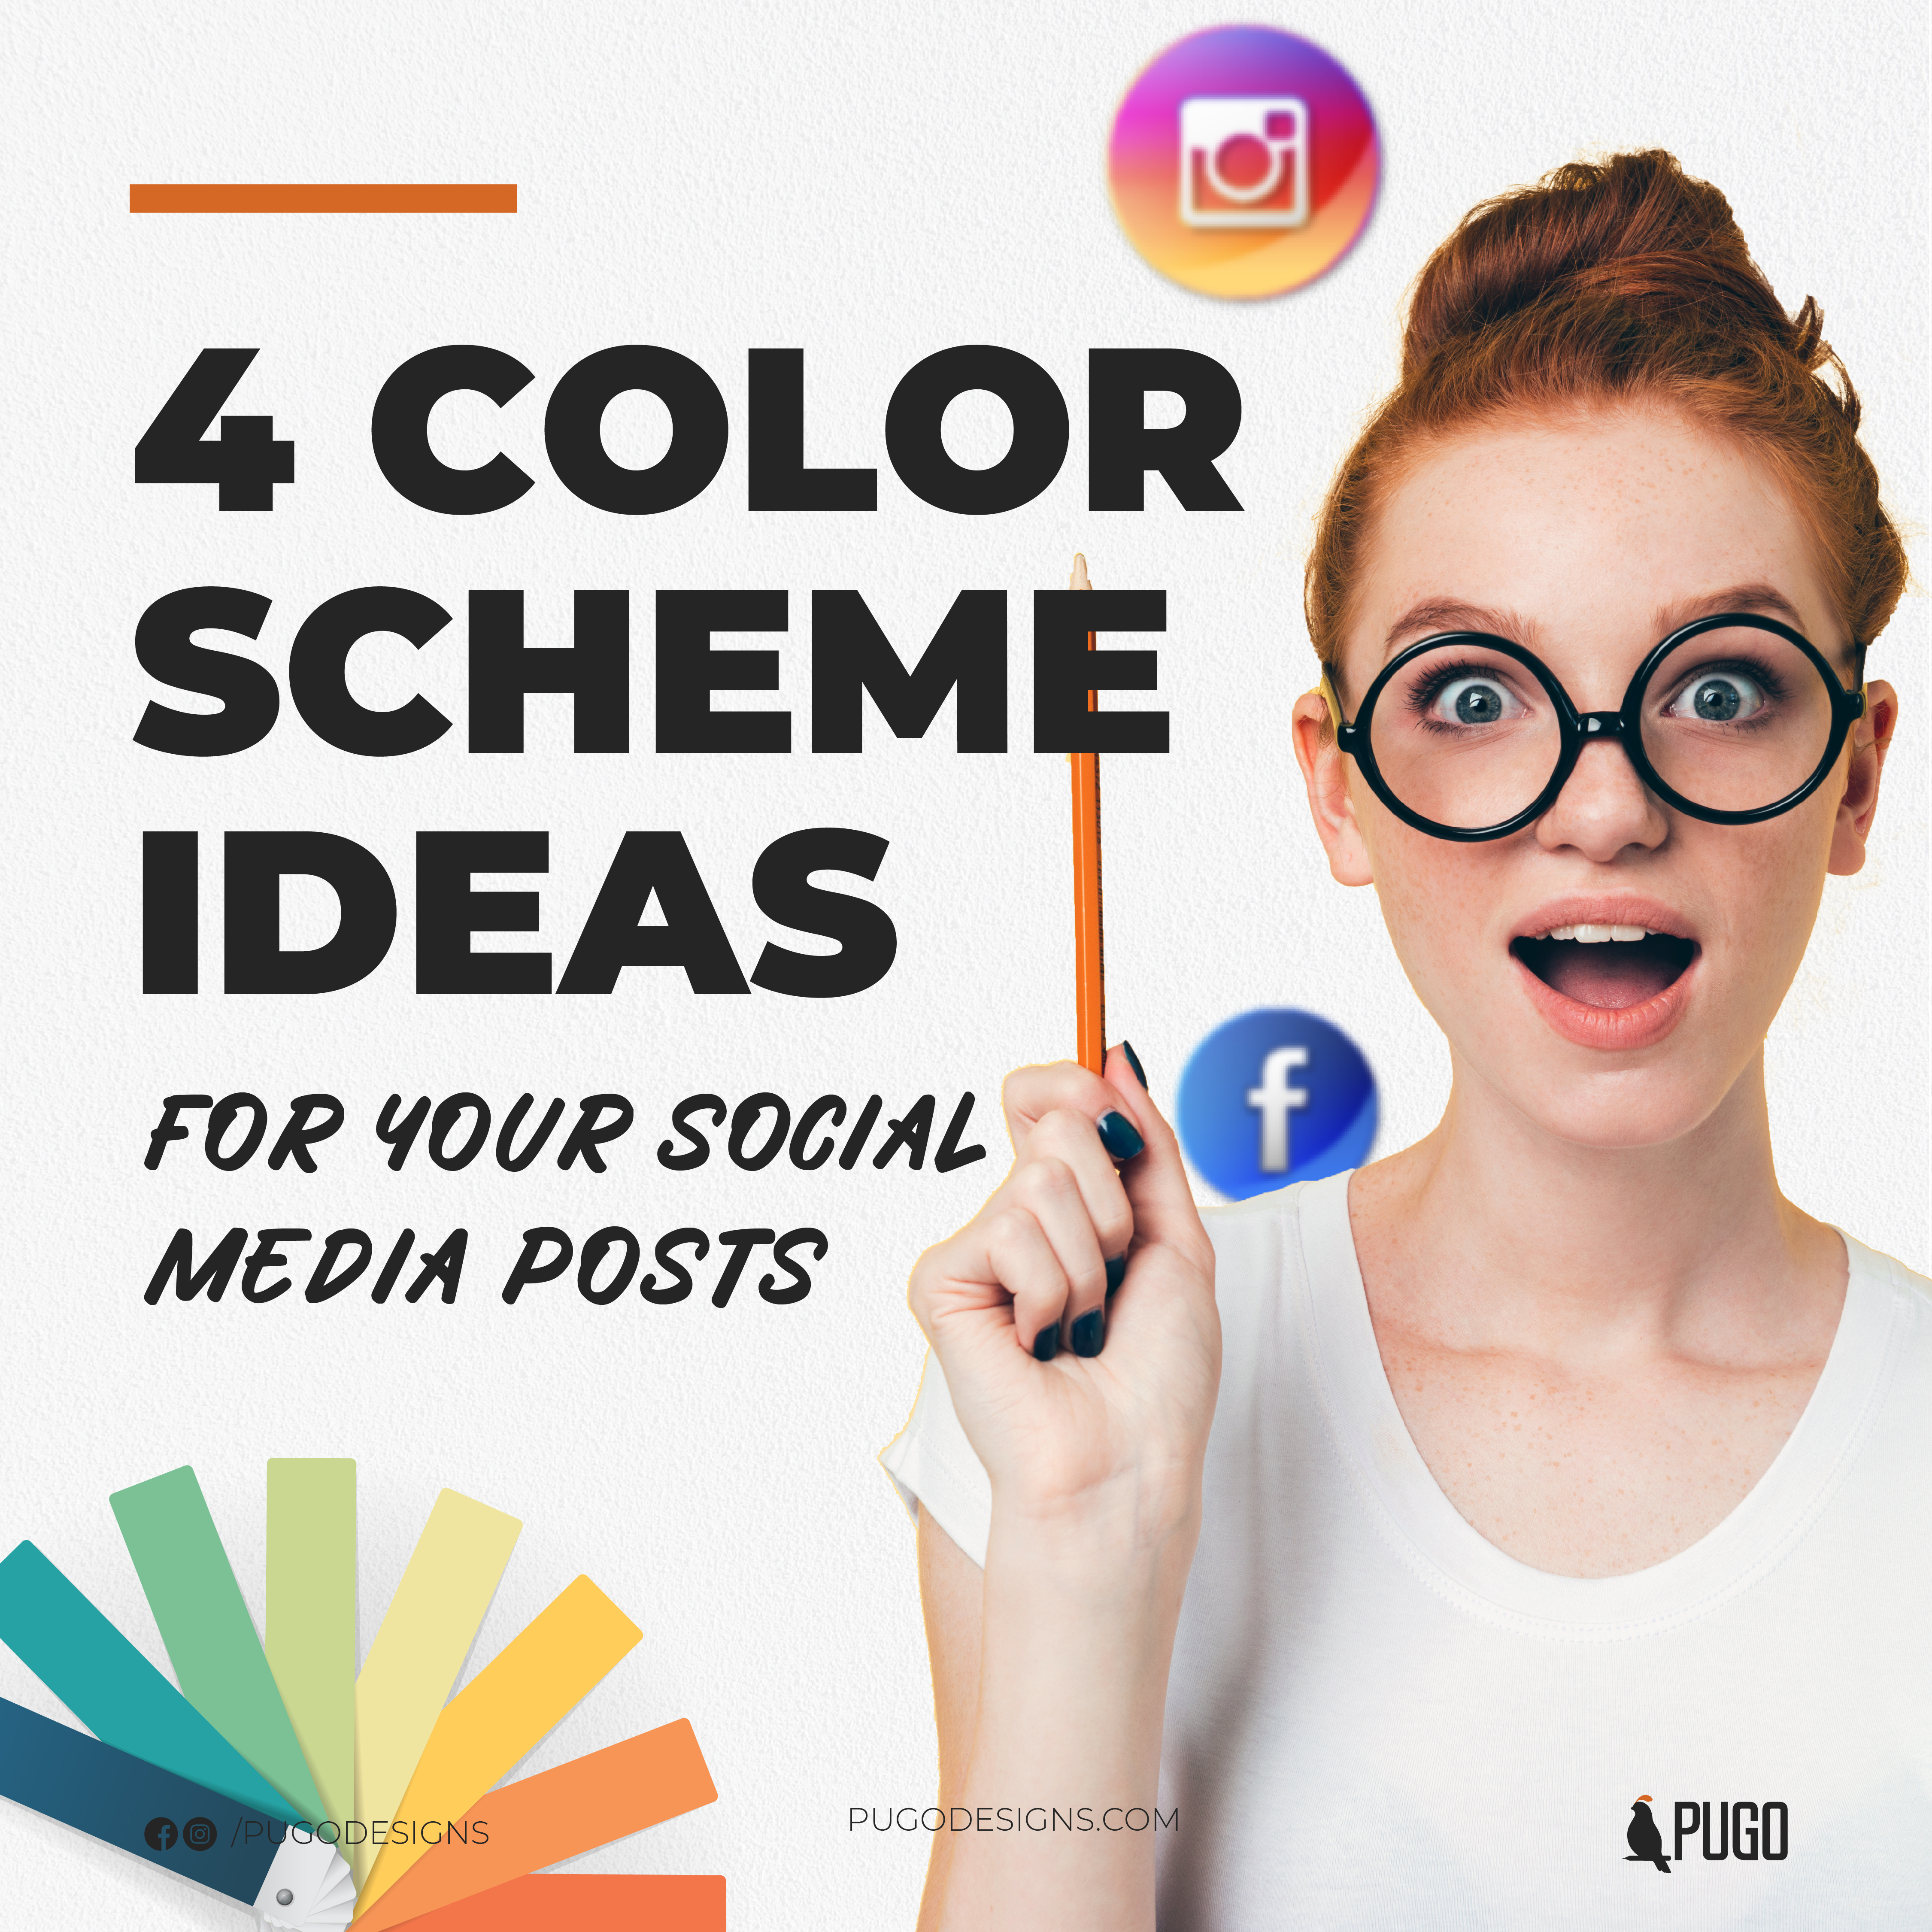 4 Color Scheme Ideas